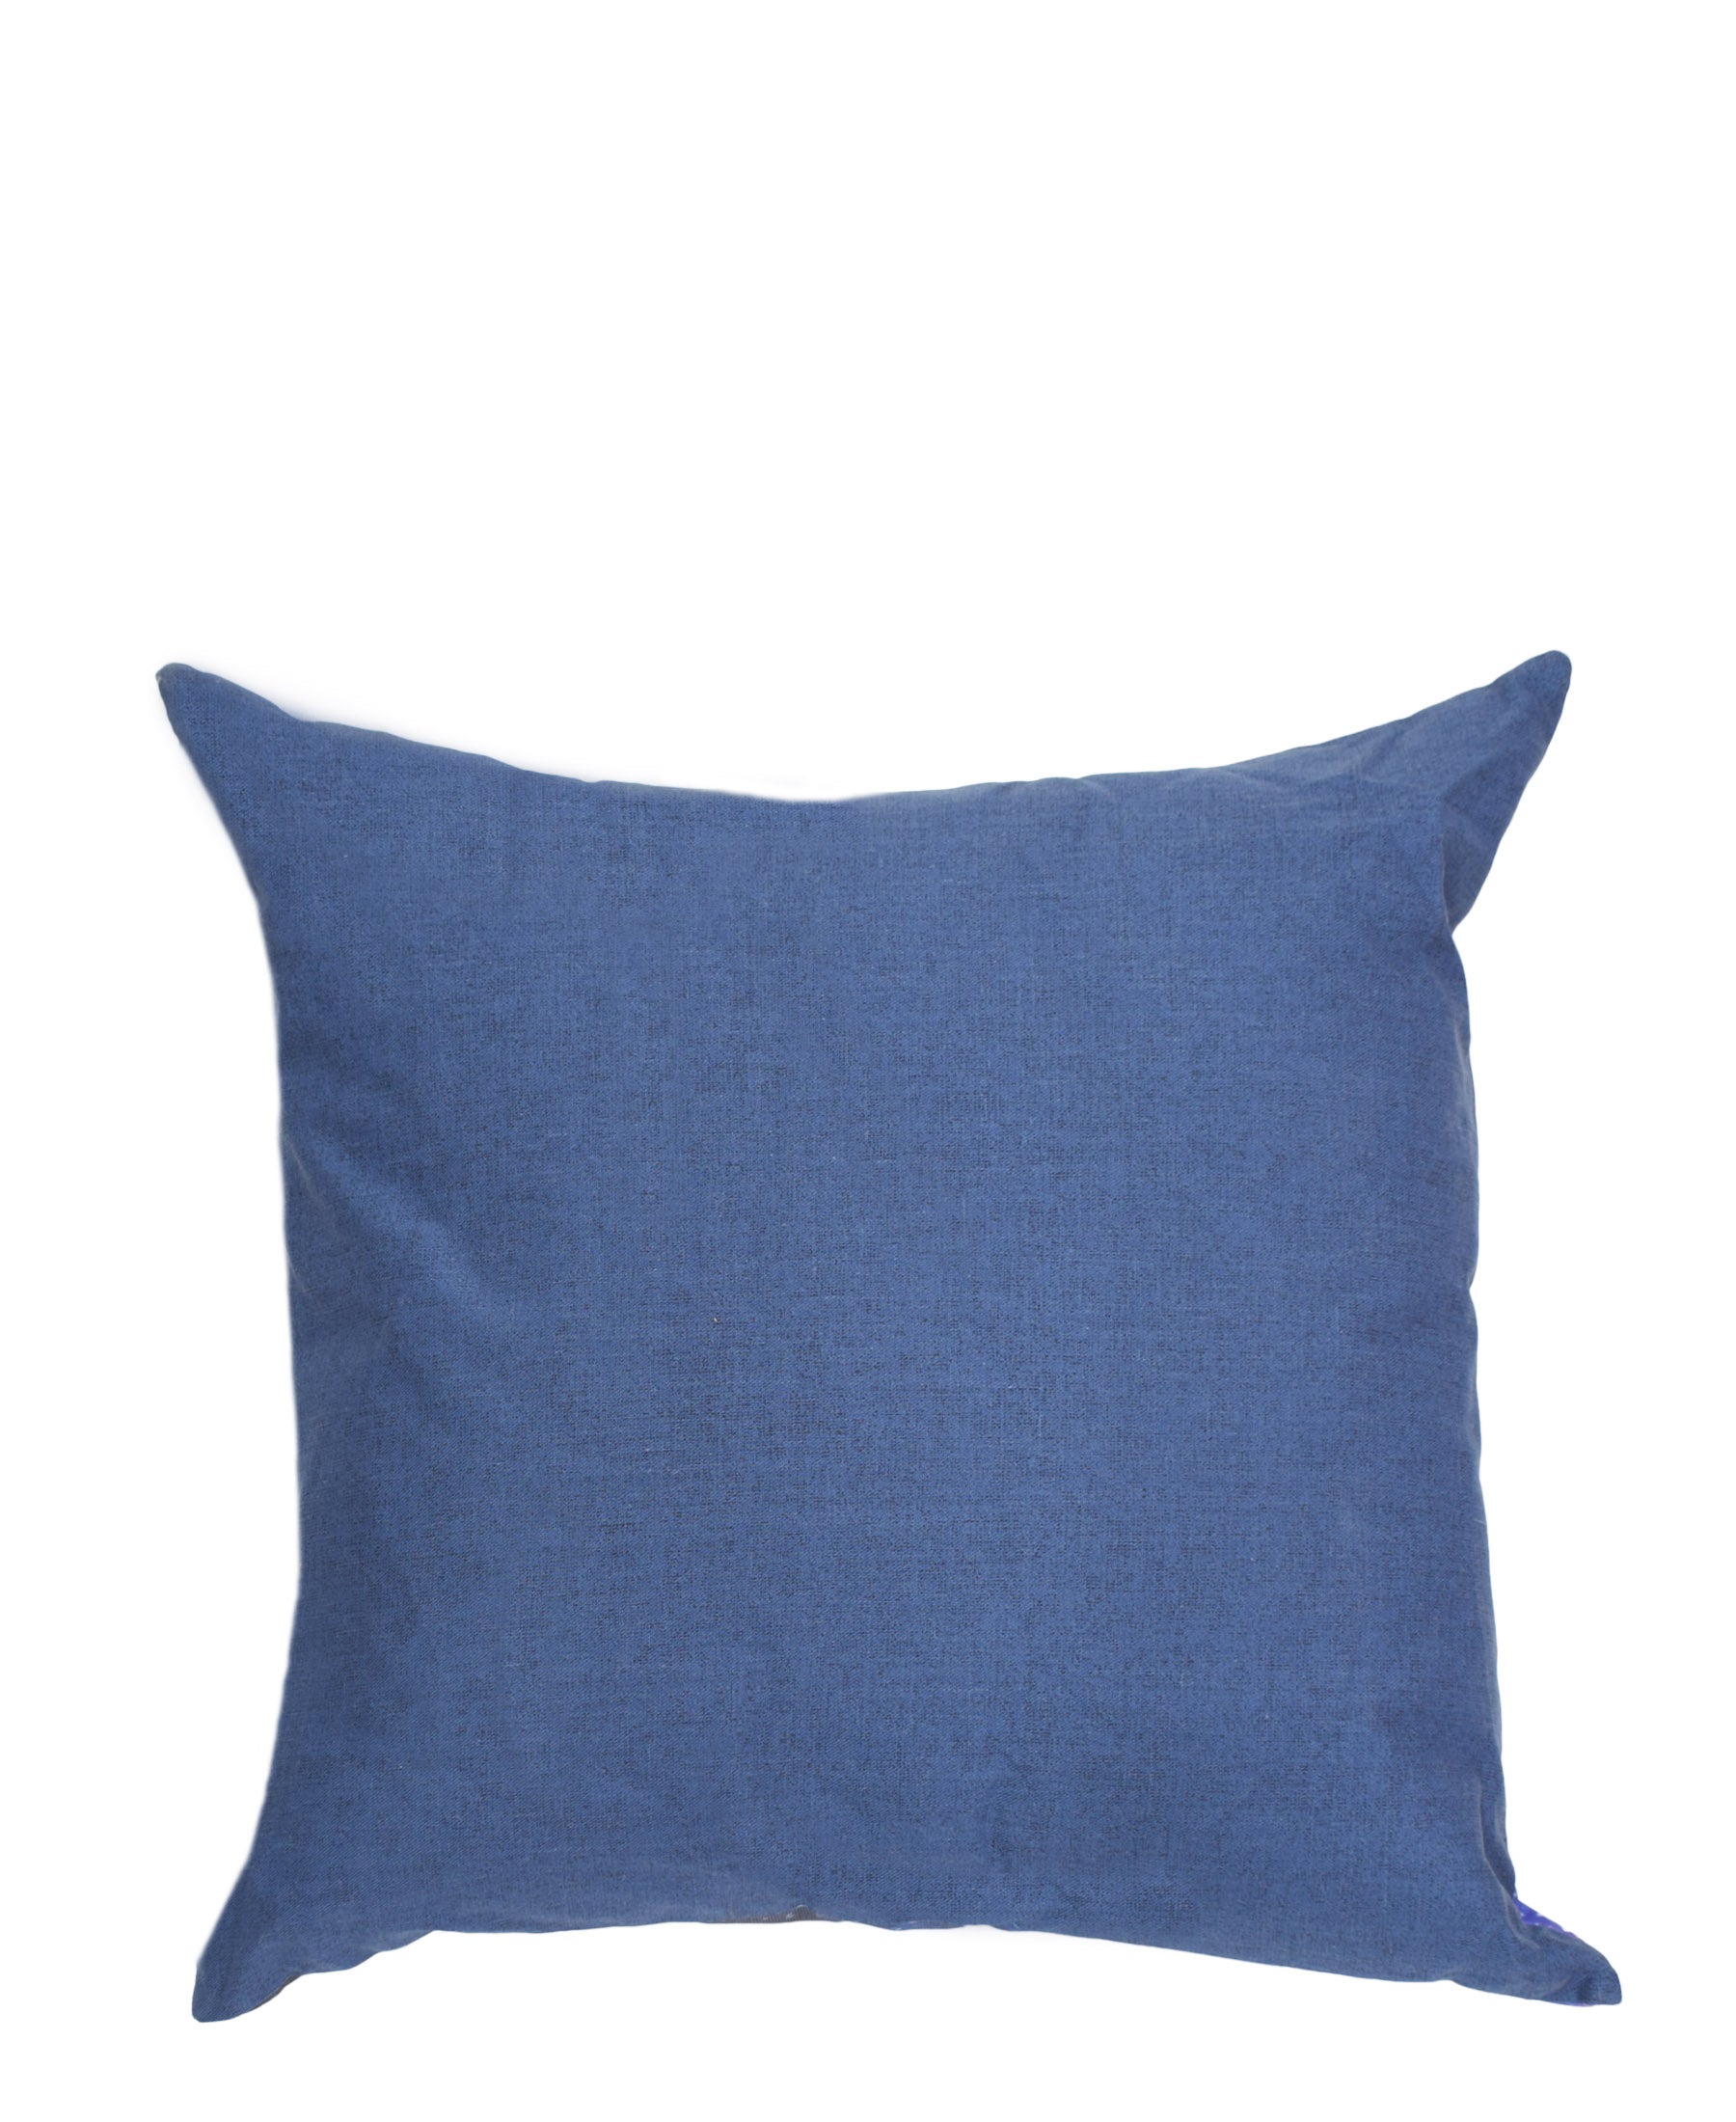 Outer Space Galaxy Cushion 45cm - Blue